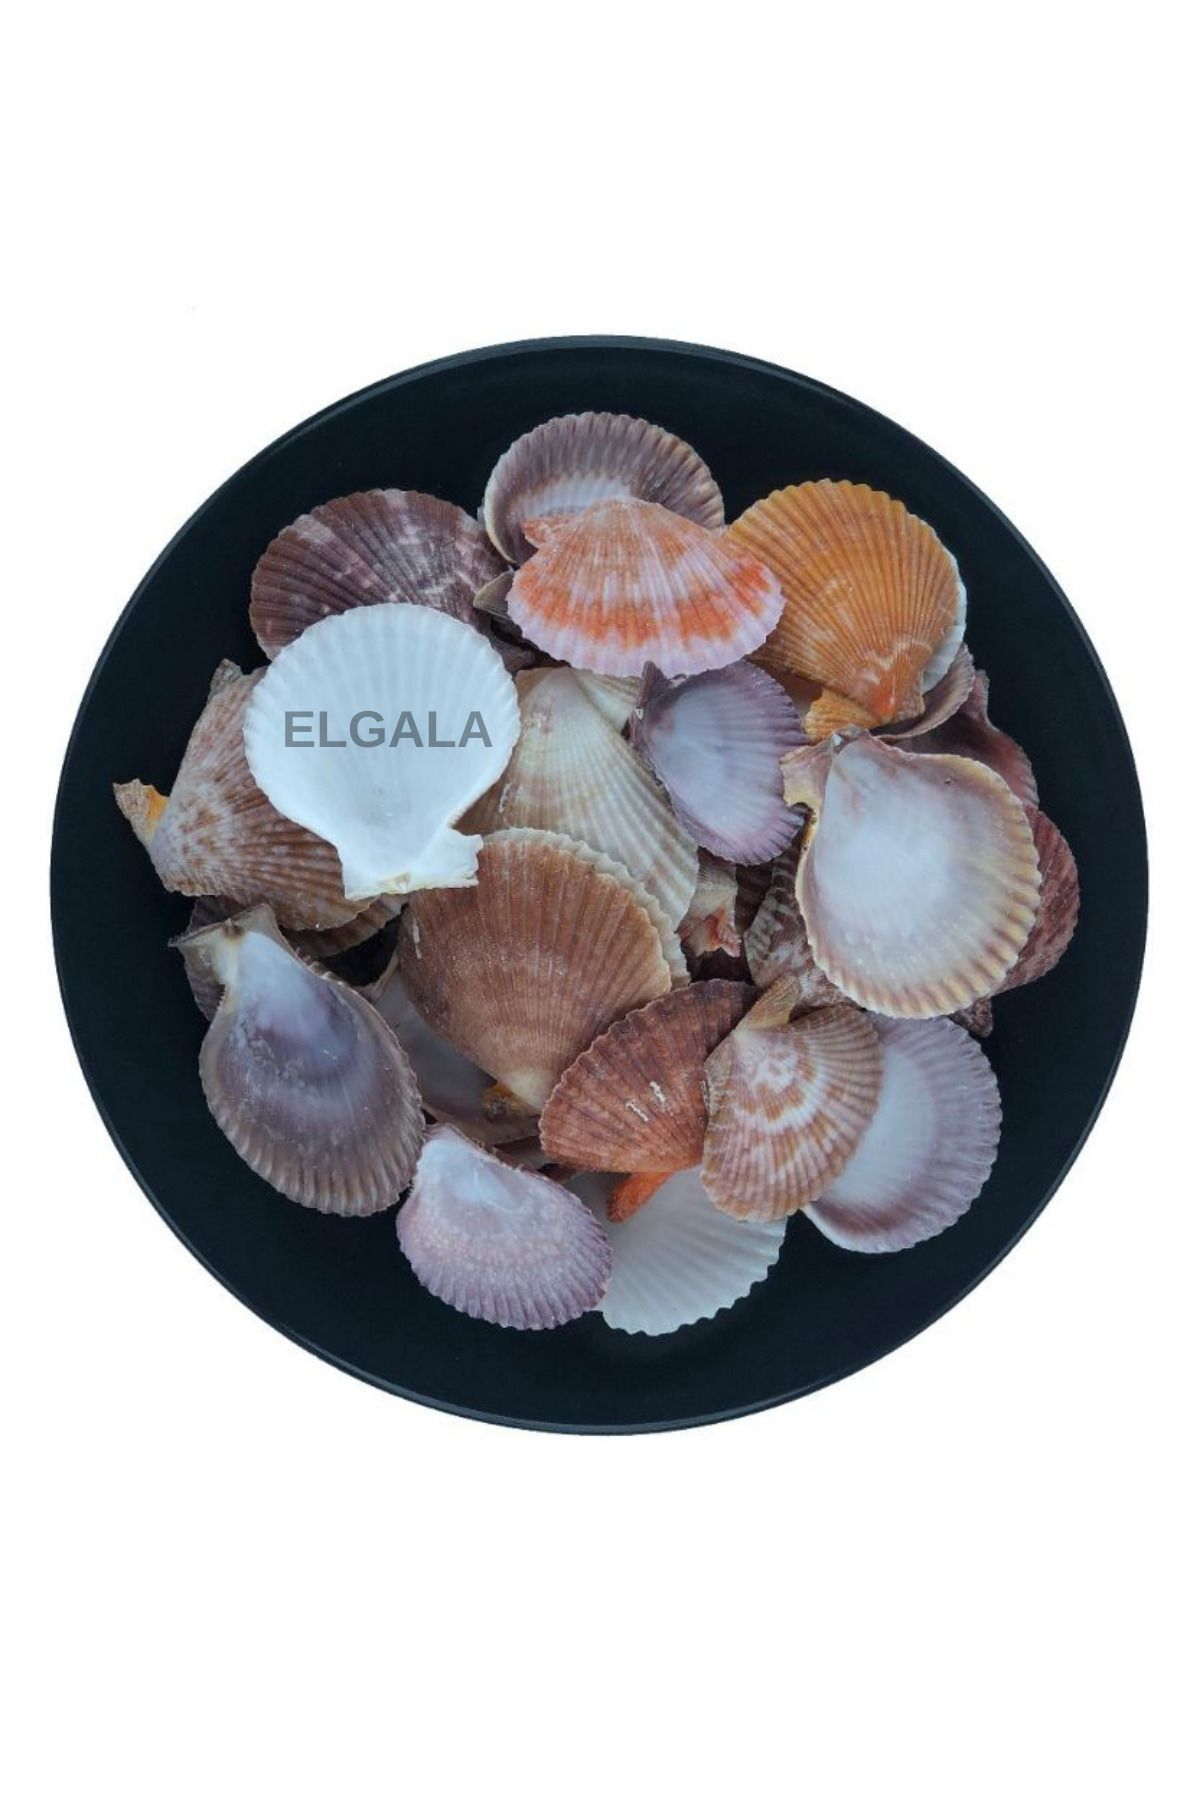 ELGALA Deniz Kabuğu Doğal Midye Kabuğu 100 Gram Pecten Novalis Naturel